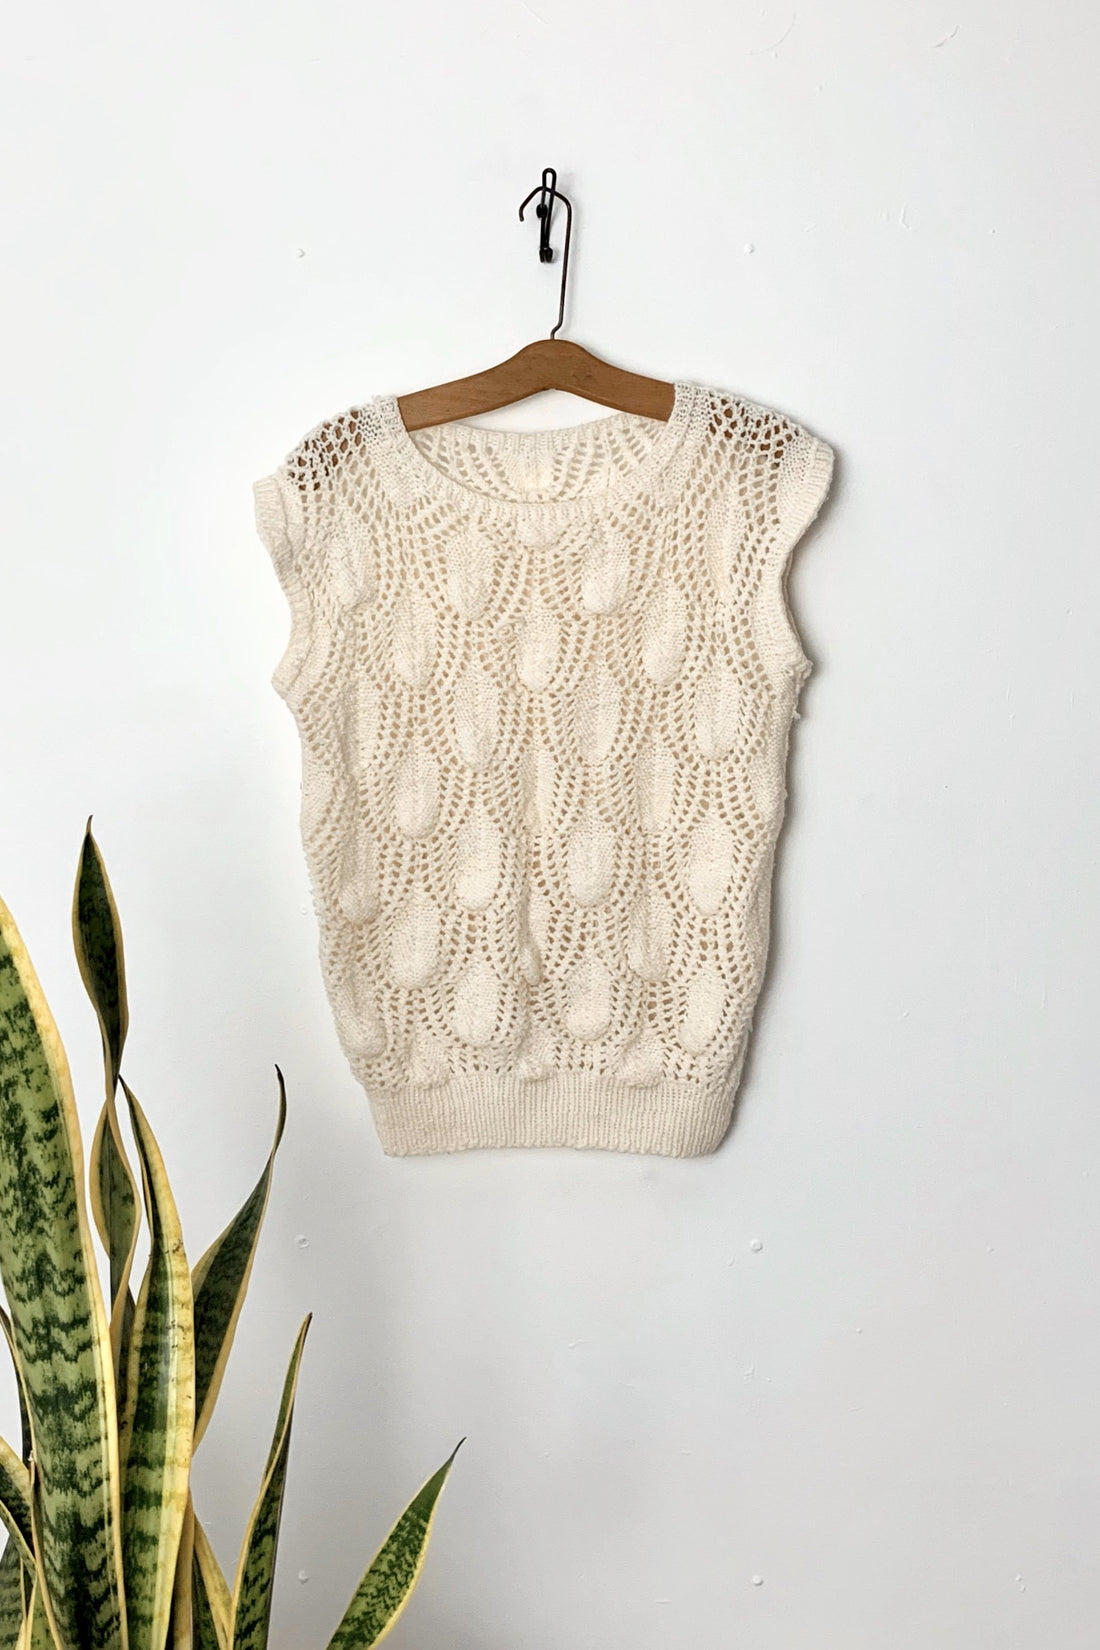 Vintage Crochet Knit Texture Top-closiTherapi | vinTage